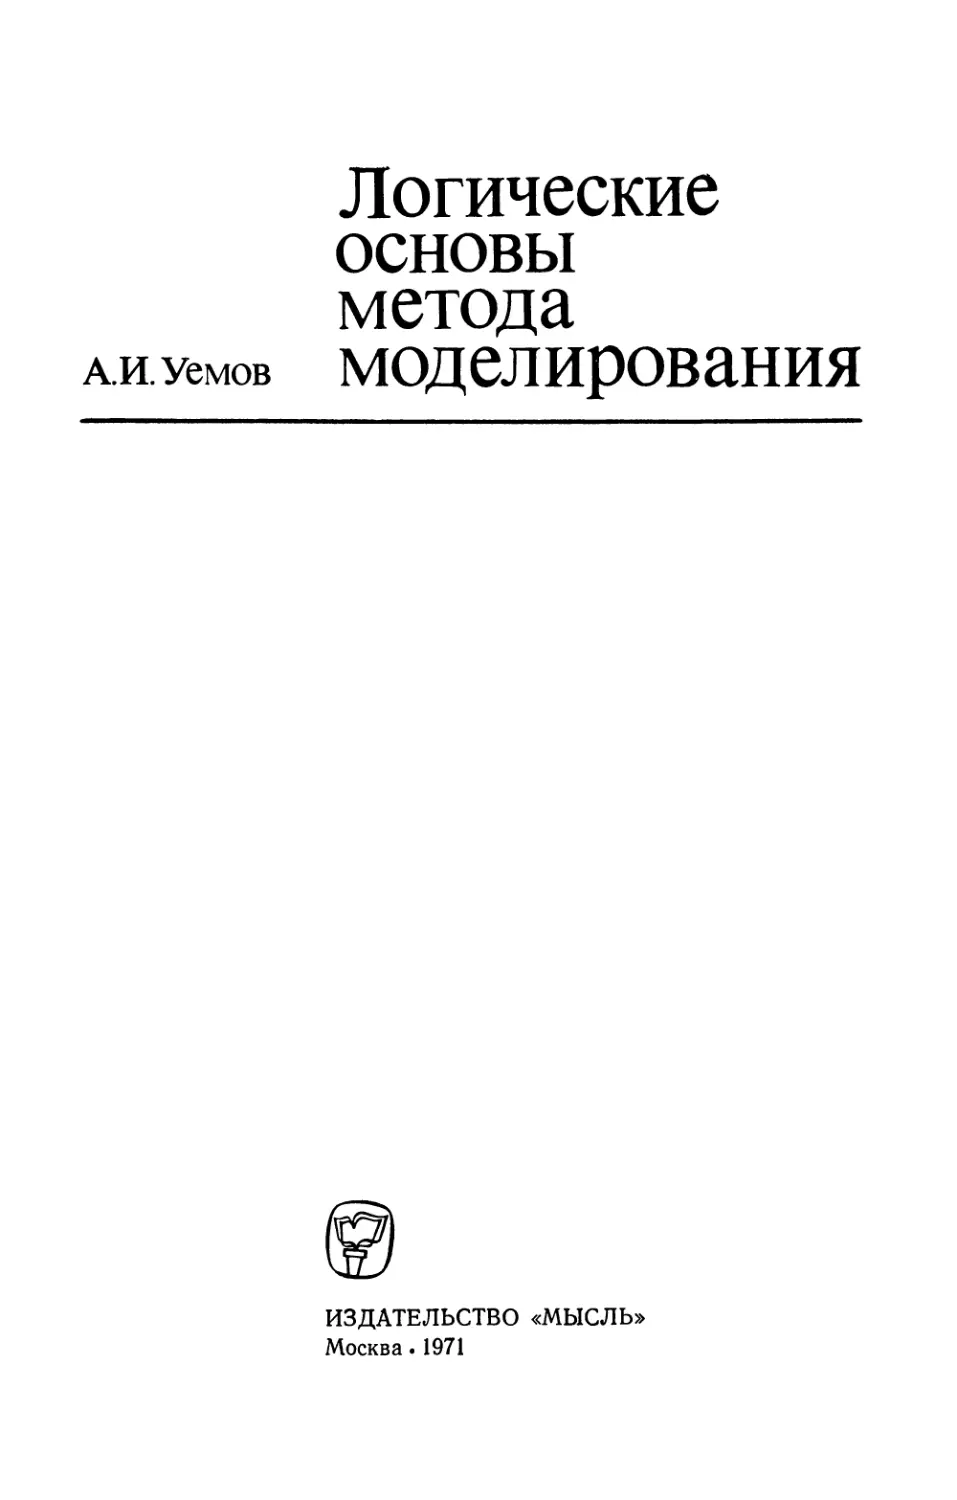 Уемов А.И. Логические основы метода моделирования - 1971